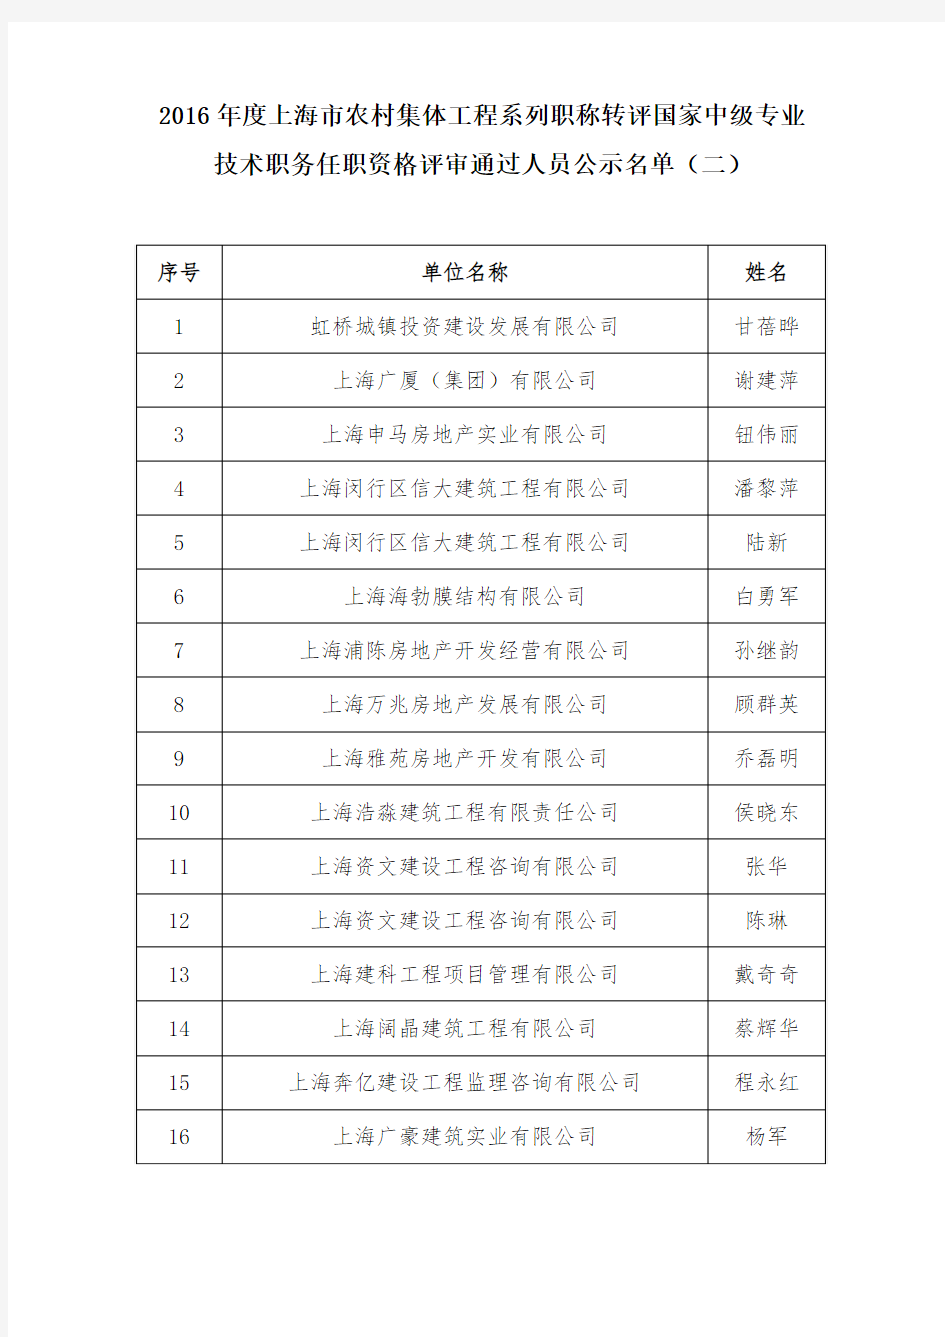 技术职务任职资格评审通过人员公示名单(二)